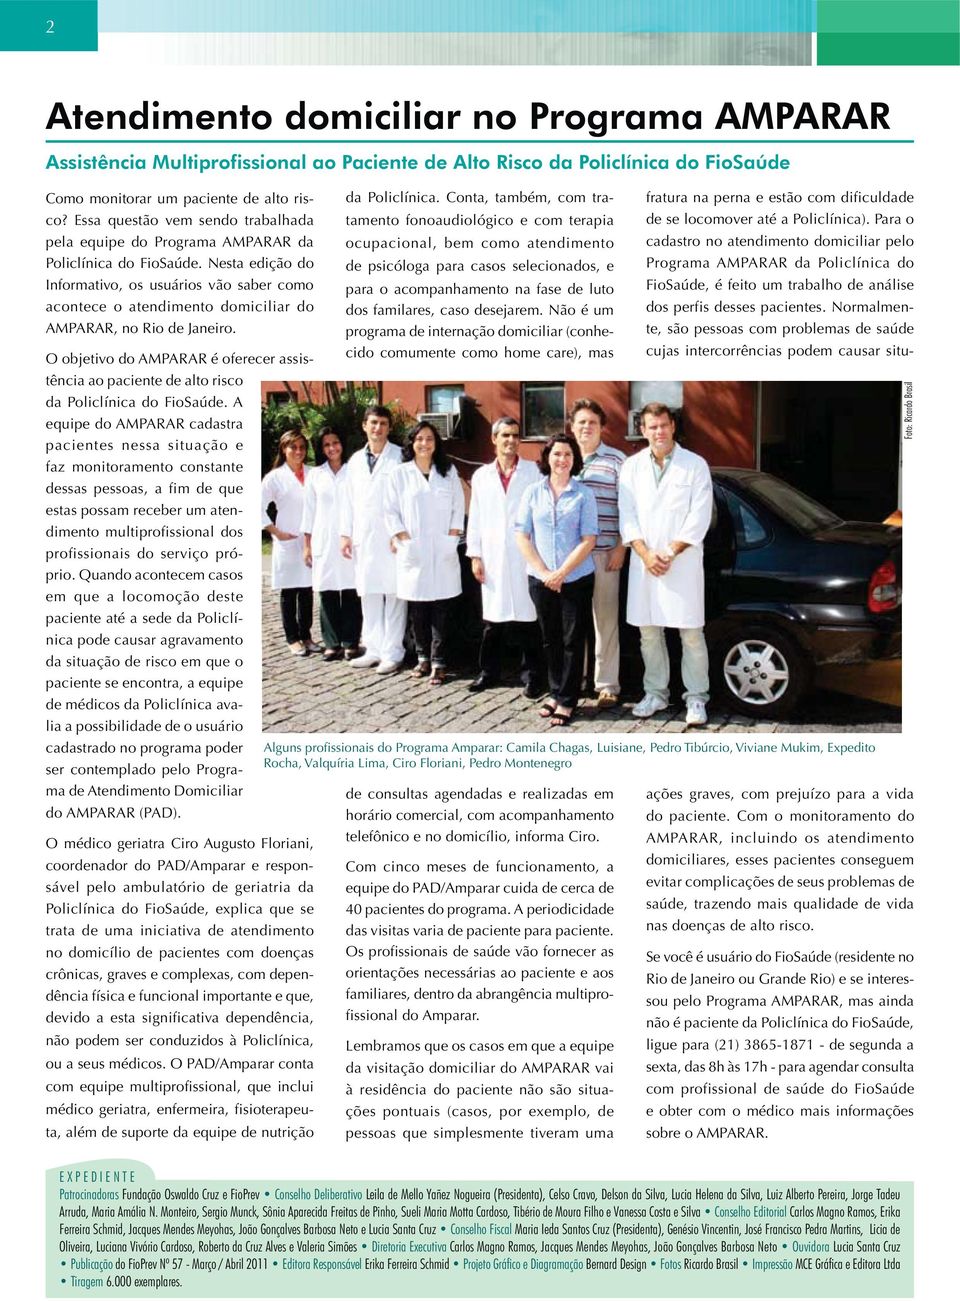 Nesta edição do Informativo, os usuários vão saber como acontece o atendimento domiciliar do AMPARAR, no Rio de Janeiro. O objetivo do AMPARAR é oferecer assistência da Policlínica.